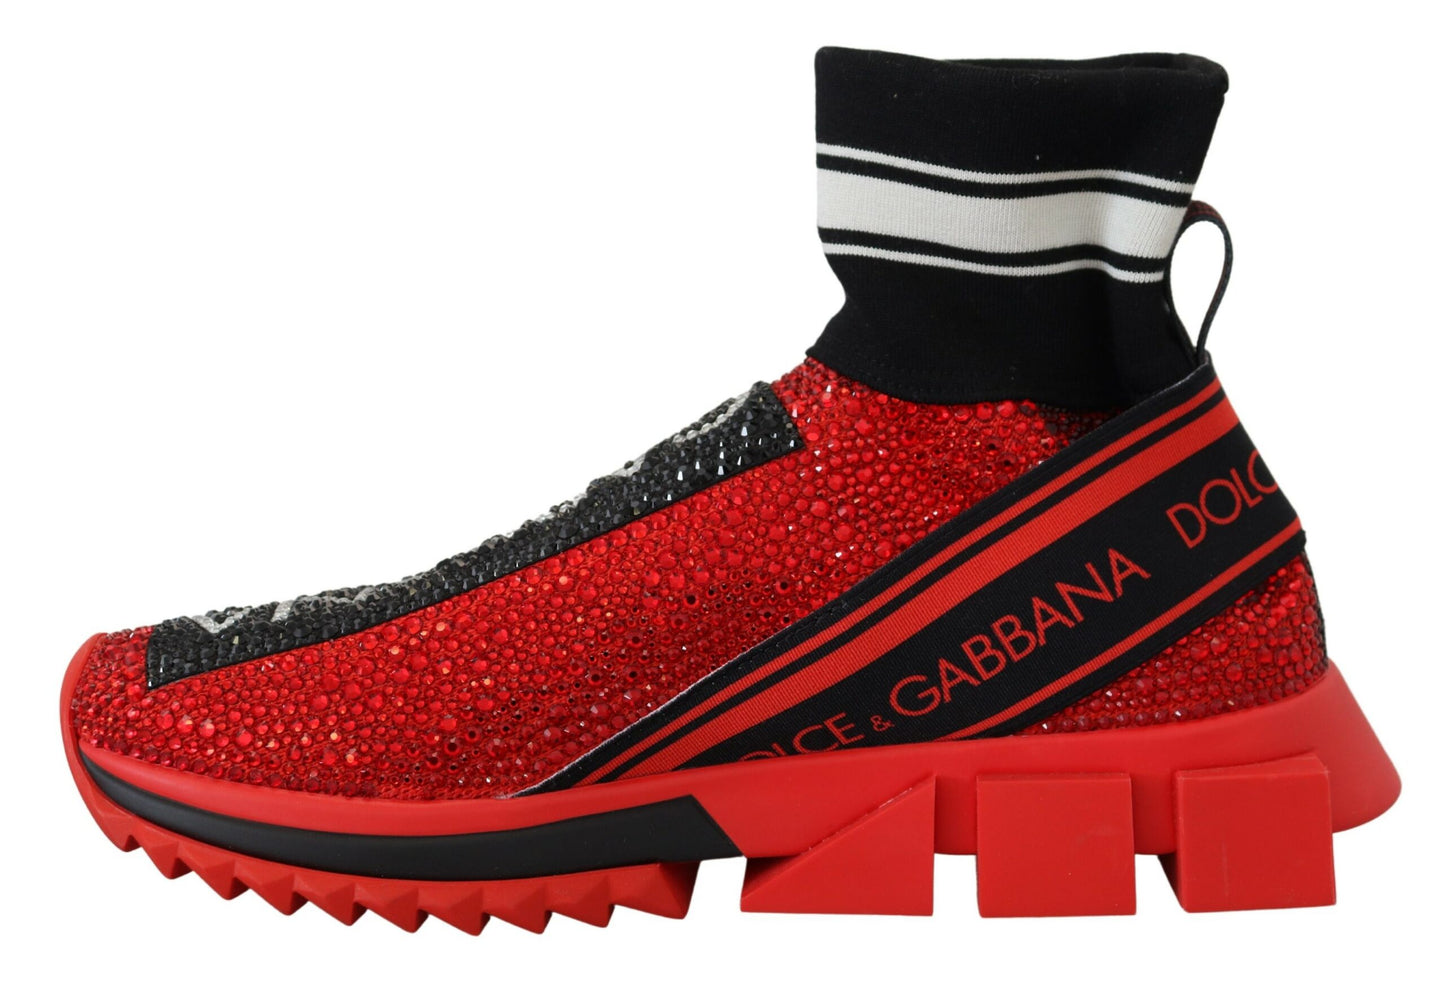 Dolce & Gabbana Red Bling Sorrento Sneakers Socken Schuhe